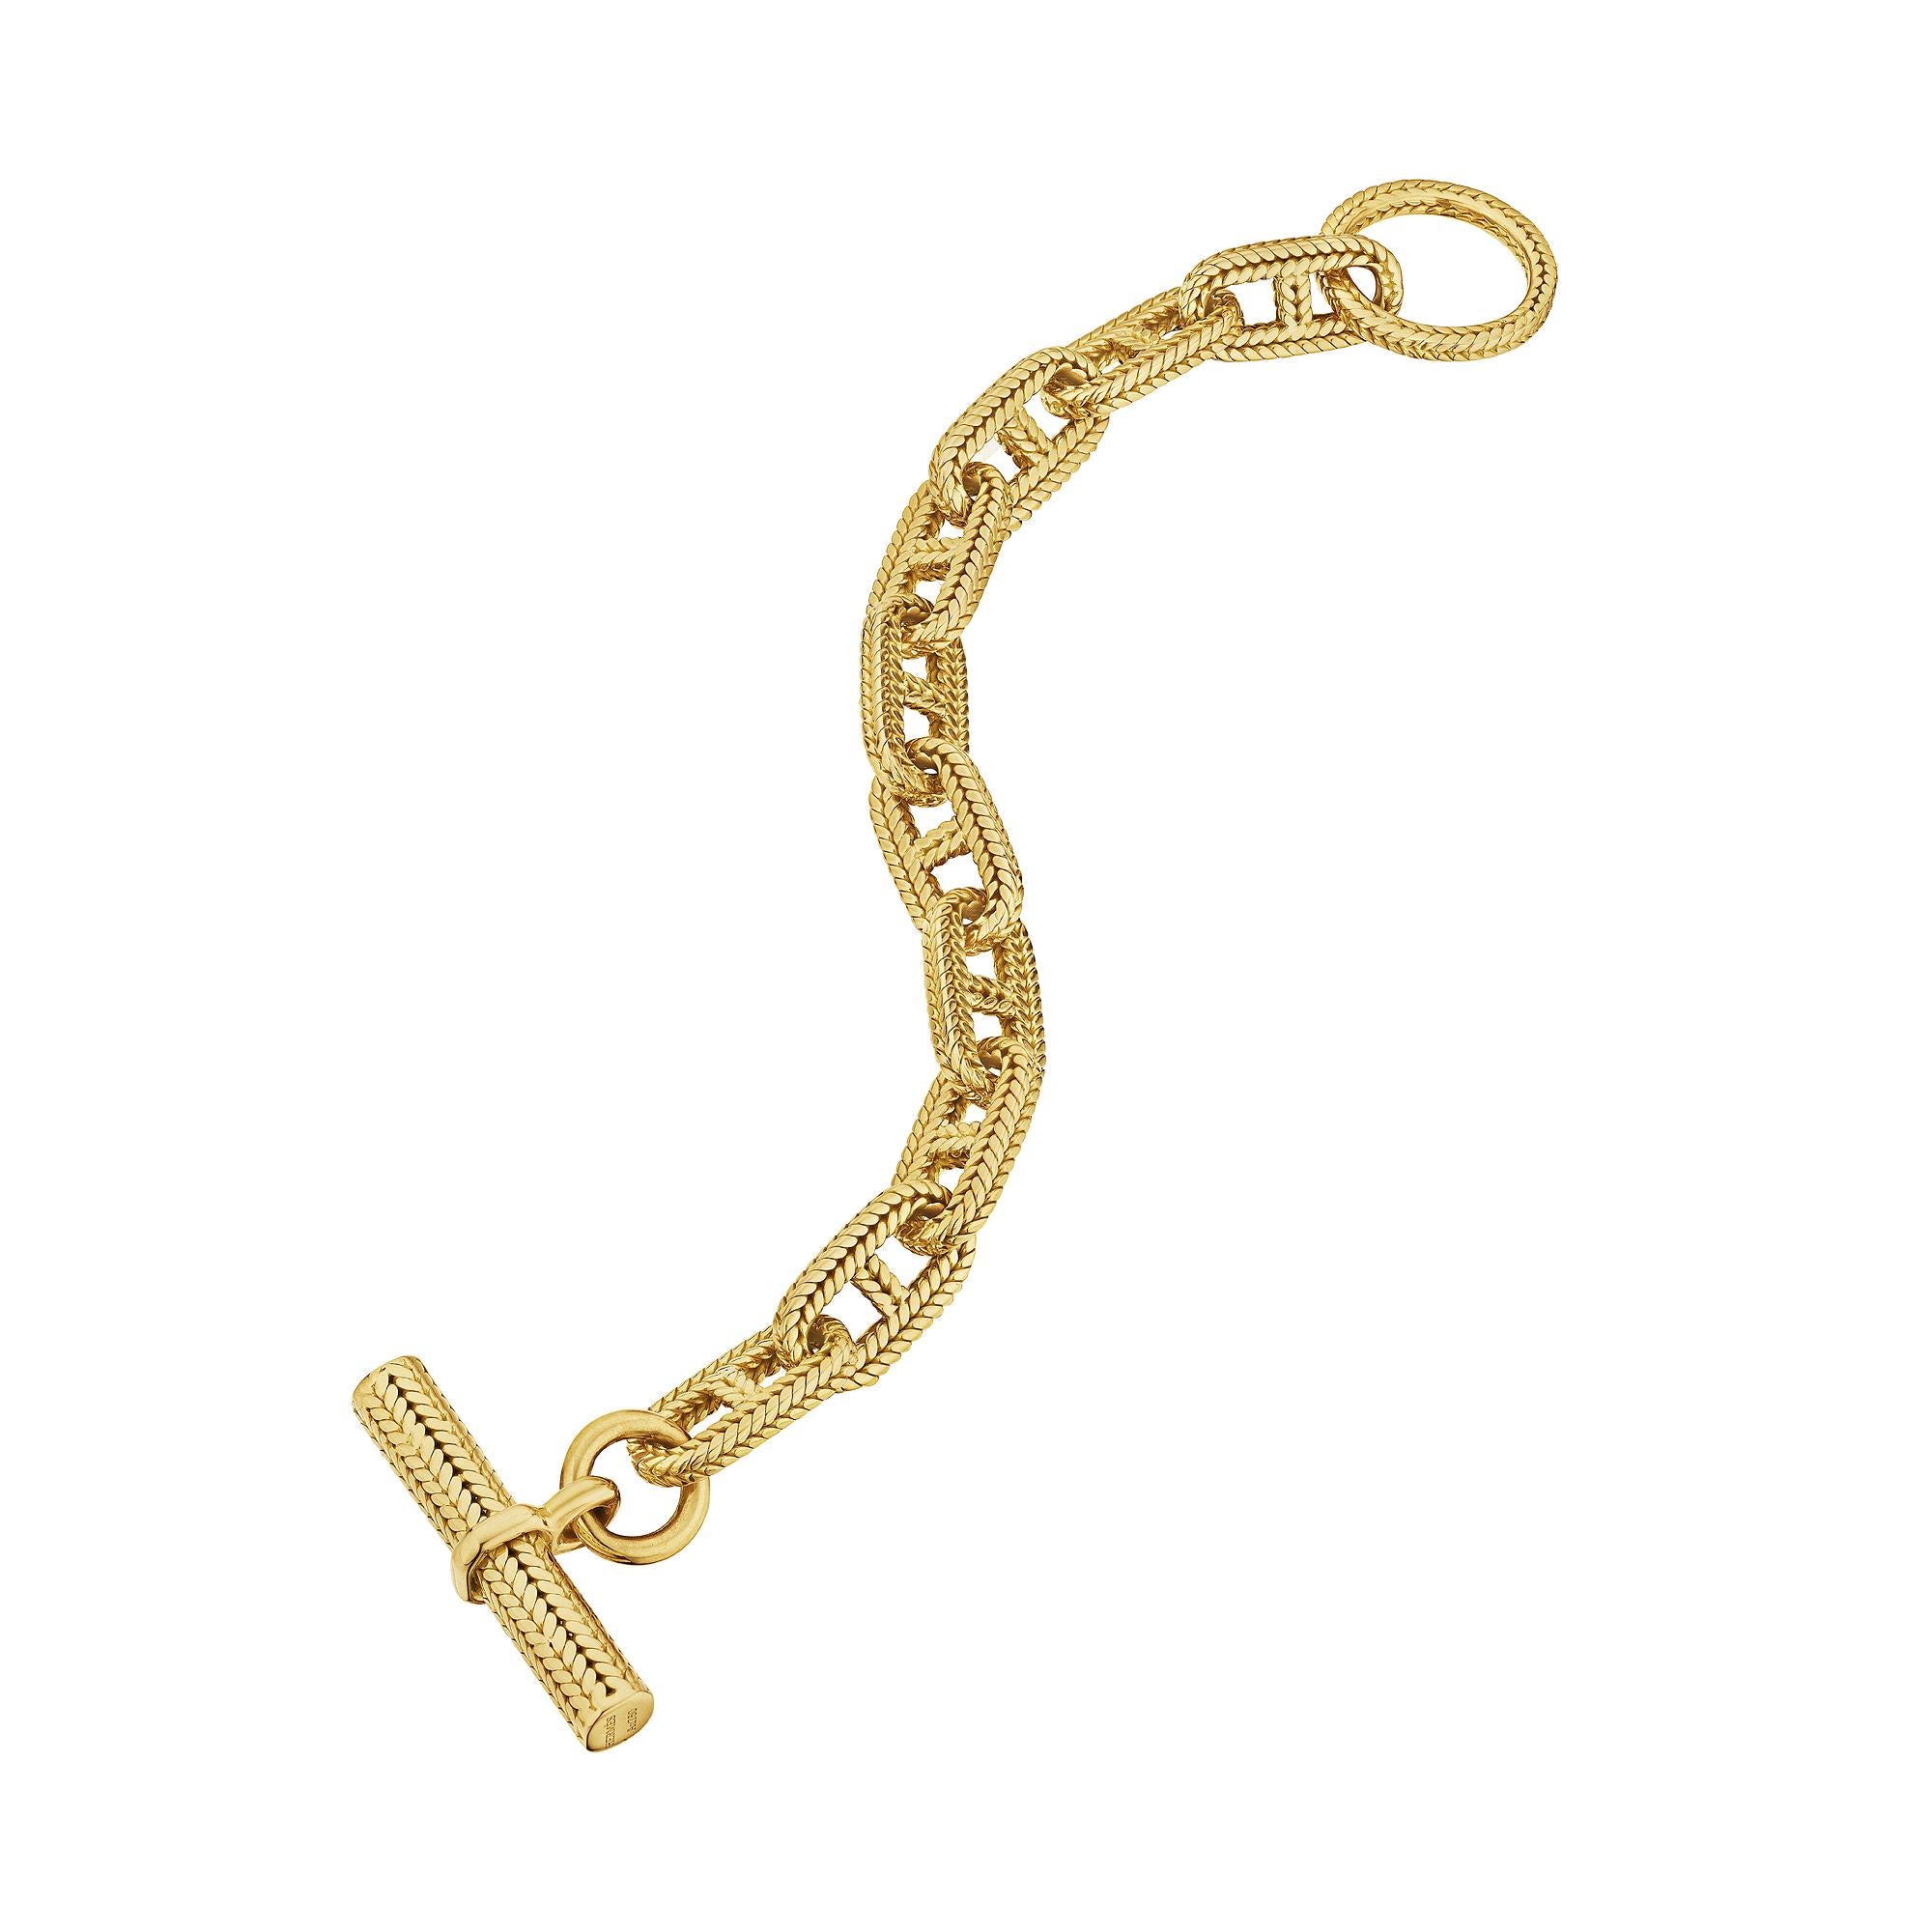 Ce bracelet Hermes Georges L'Enfant Paris 'chaine d'ancre', rare et de grande taille, est la pièce que vous recherchiez. Avec ses dix maillons fabriqués à la main, ce bracelet en or jaune 18 carats à chevrons tressés est extraordinairement